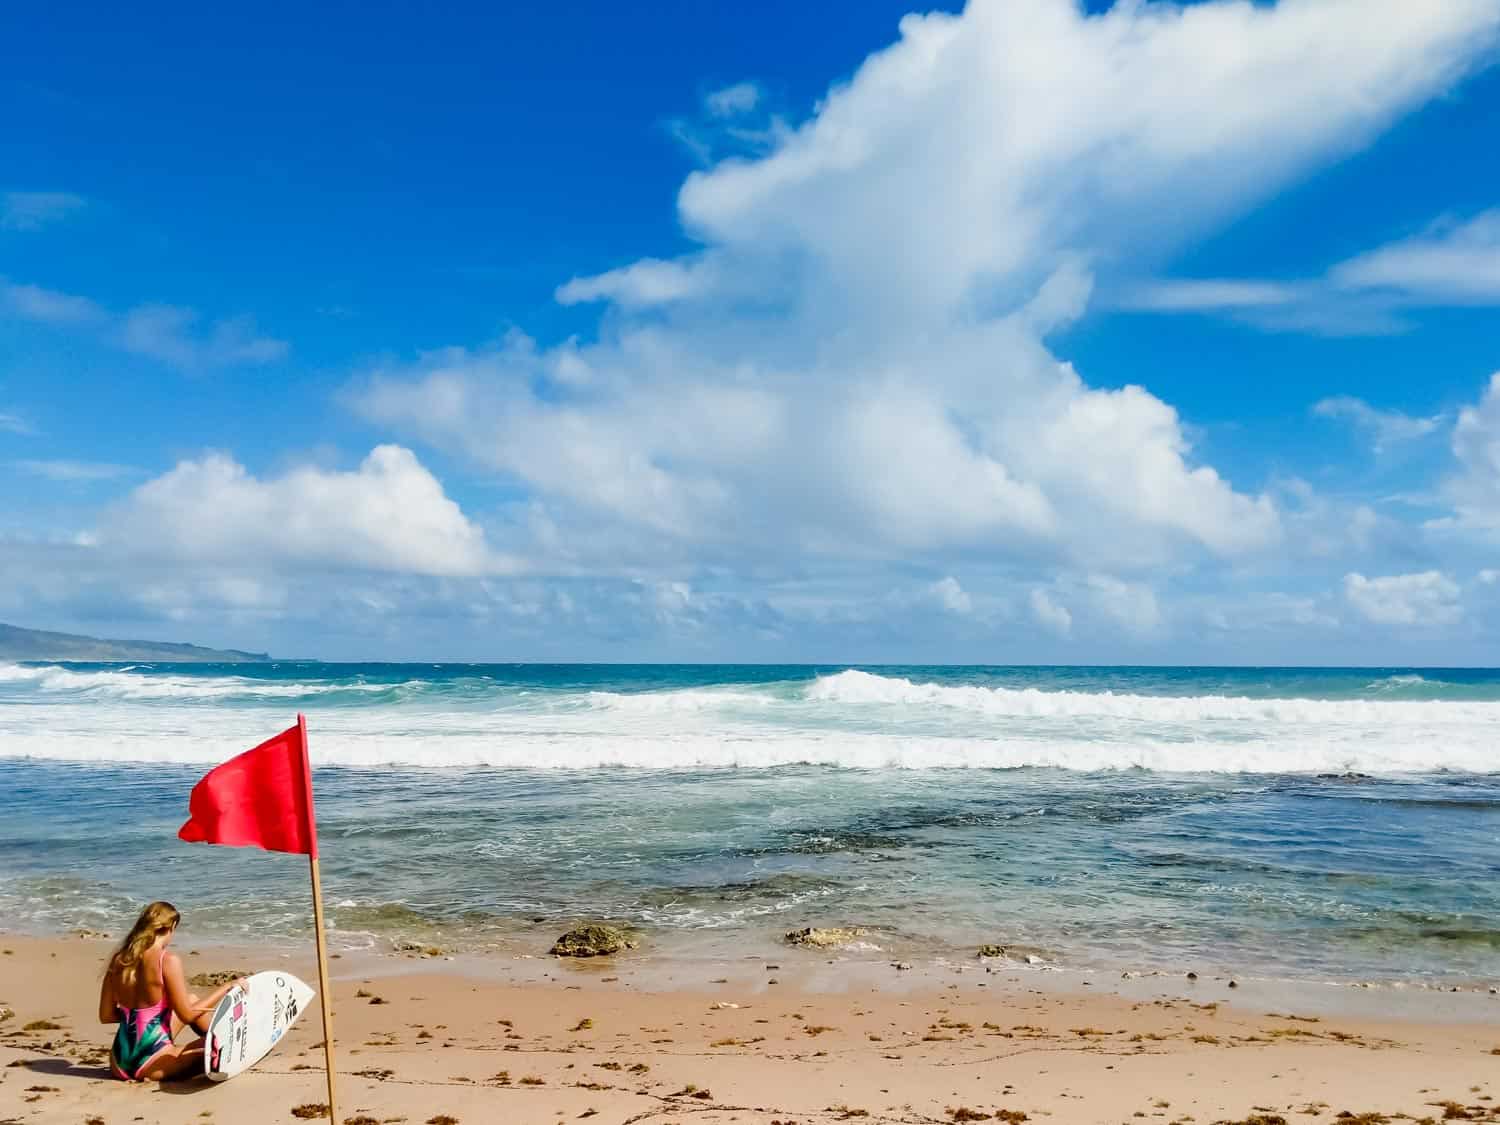 Bathsheba beach in Barbados with female surfer on beach